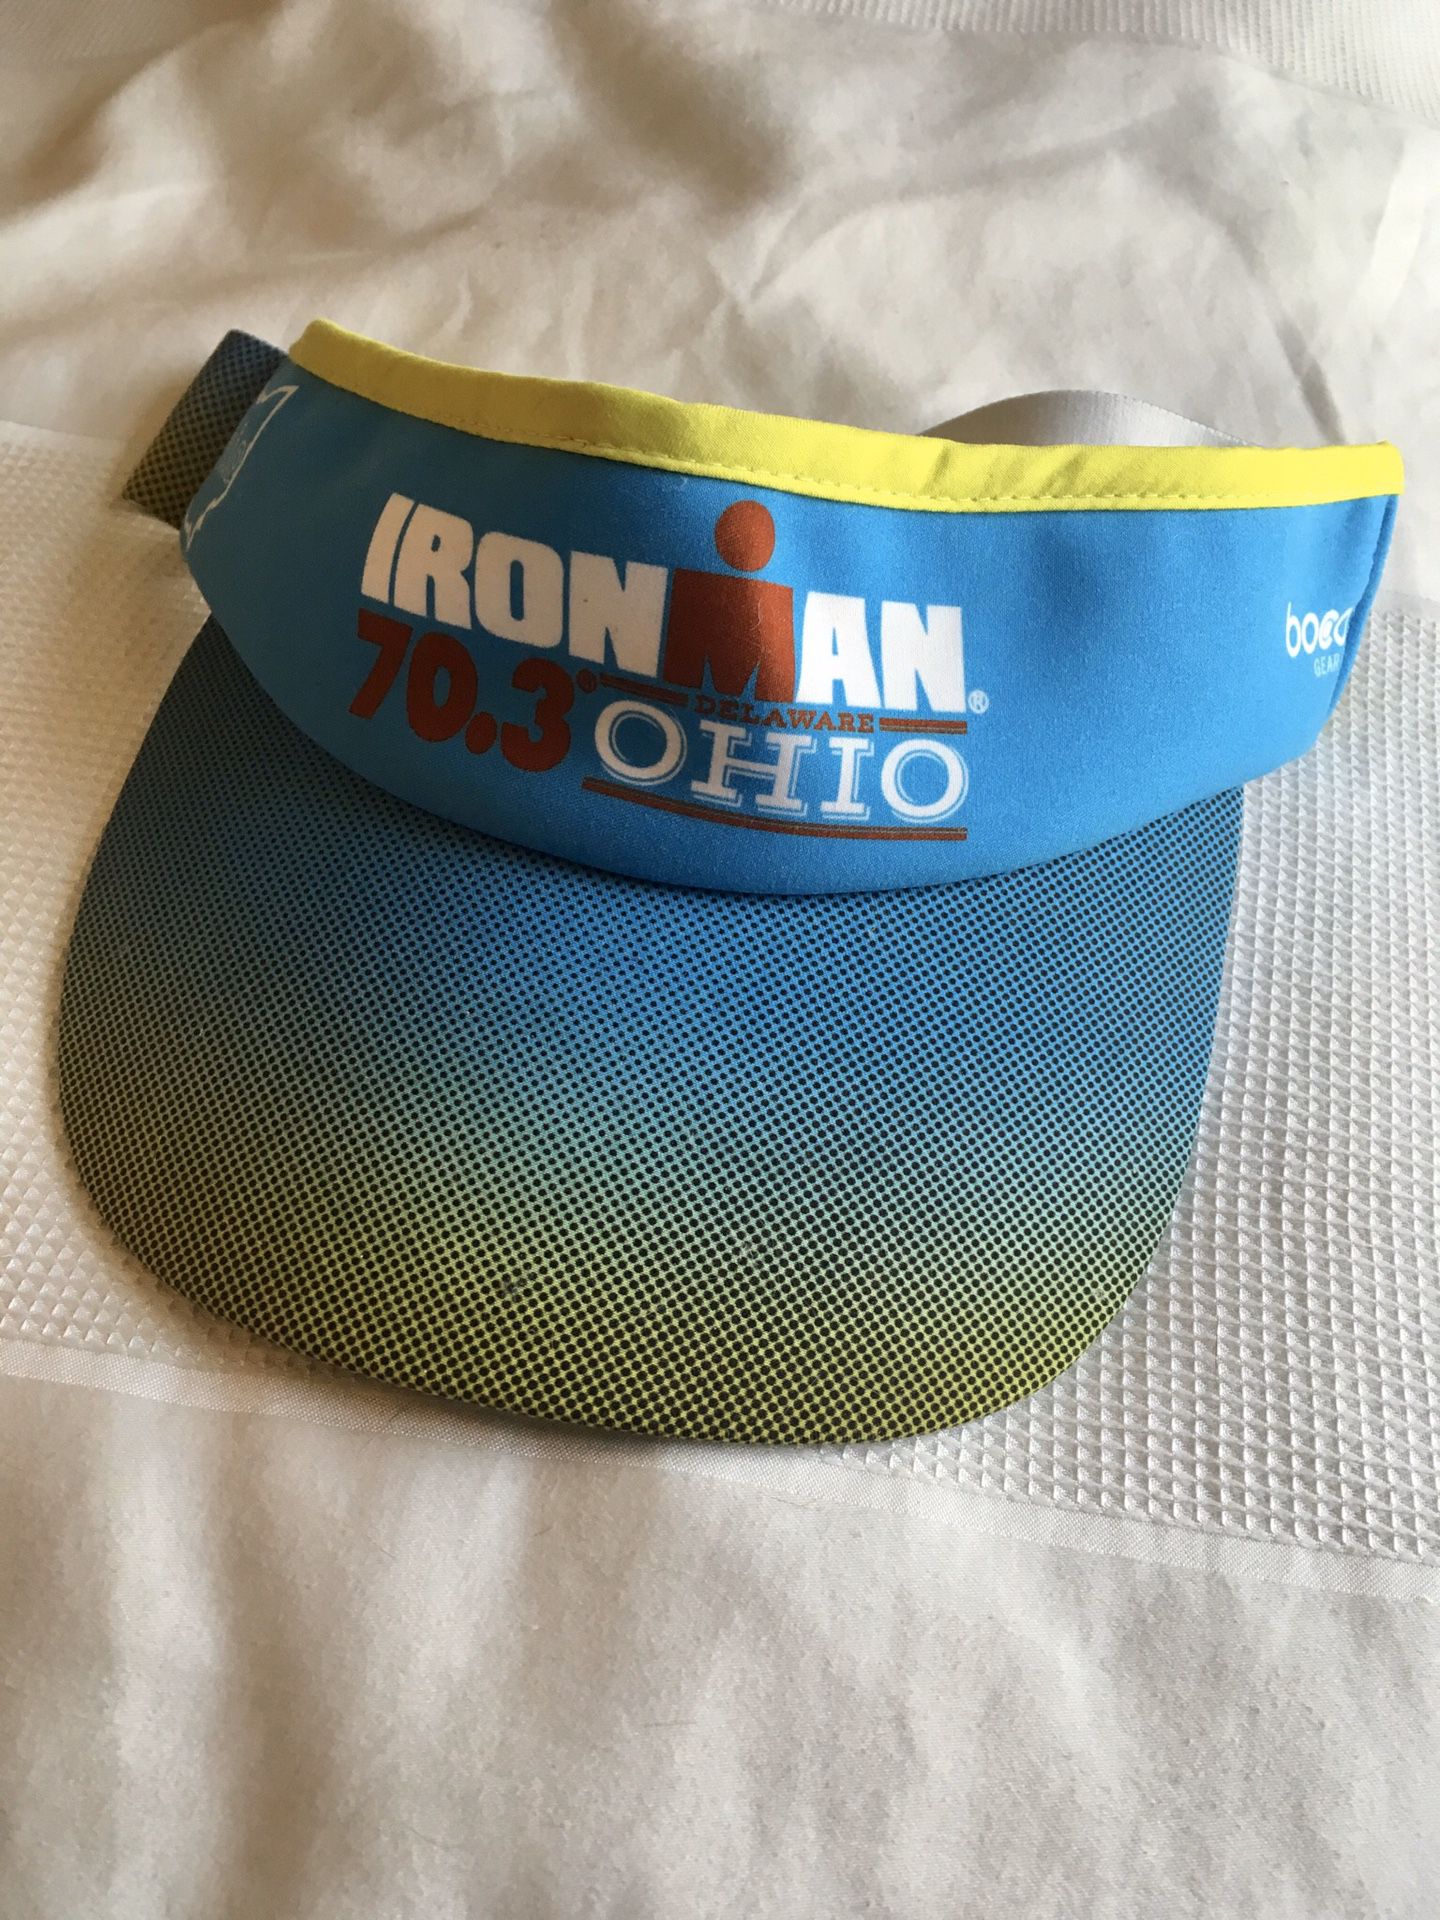 Ironman 70.3 Ohio Visor